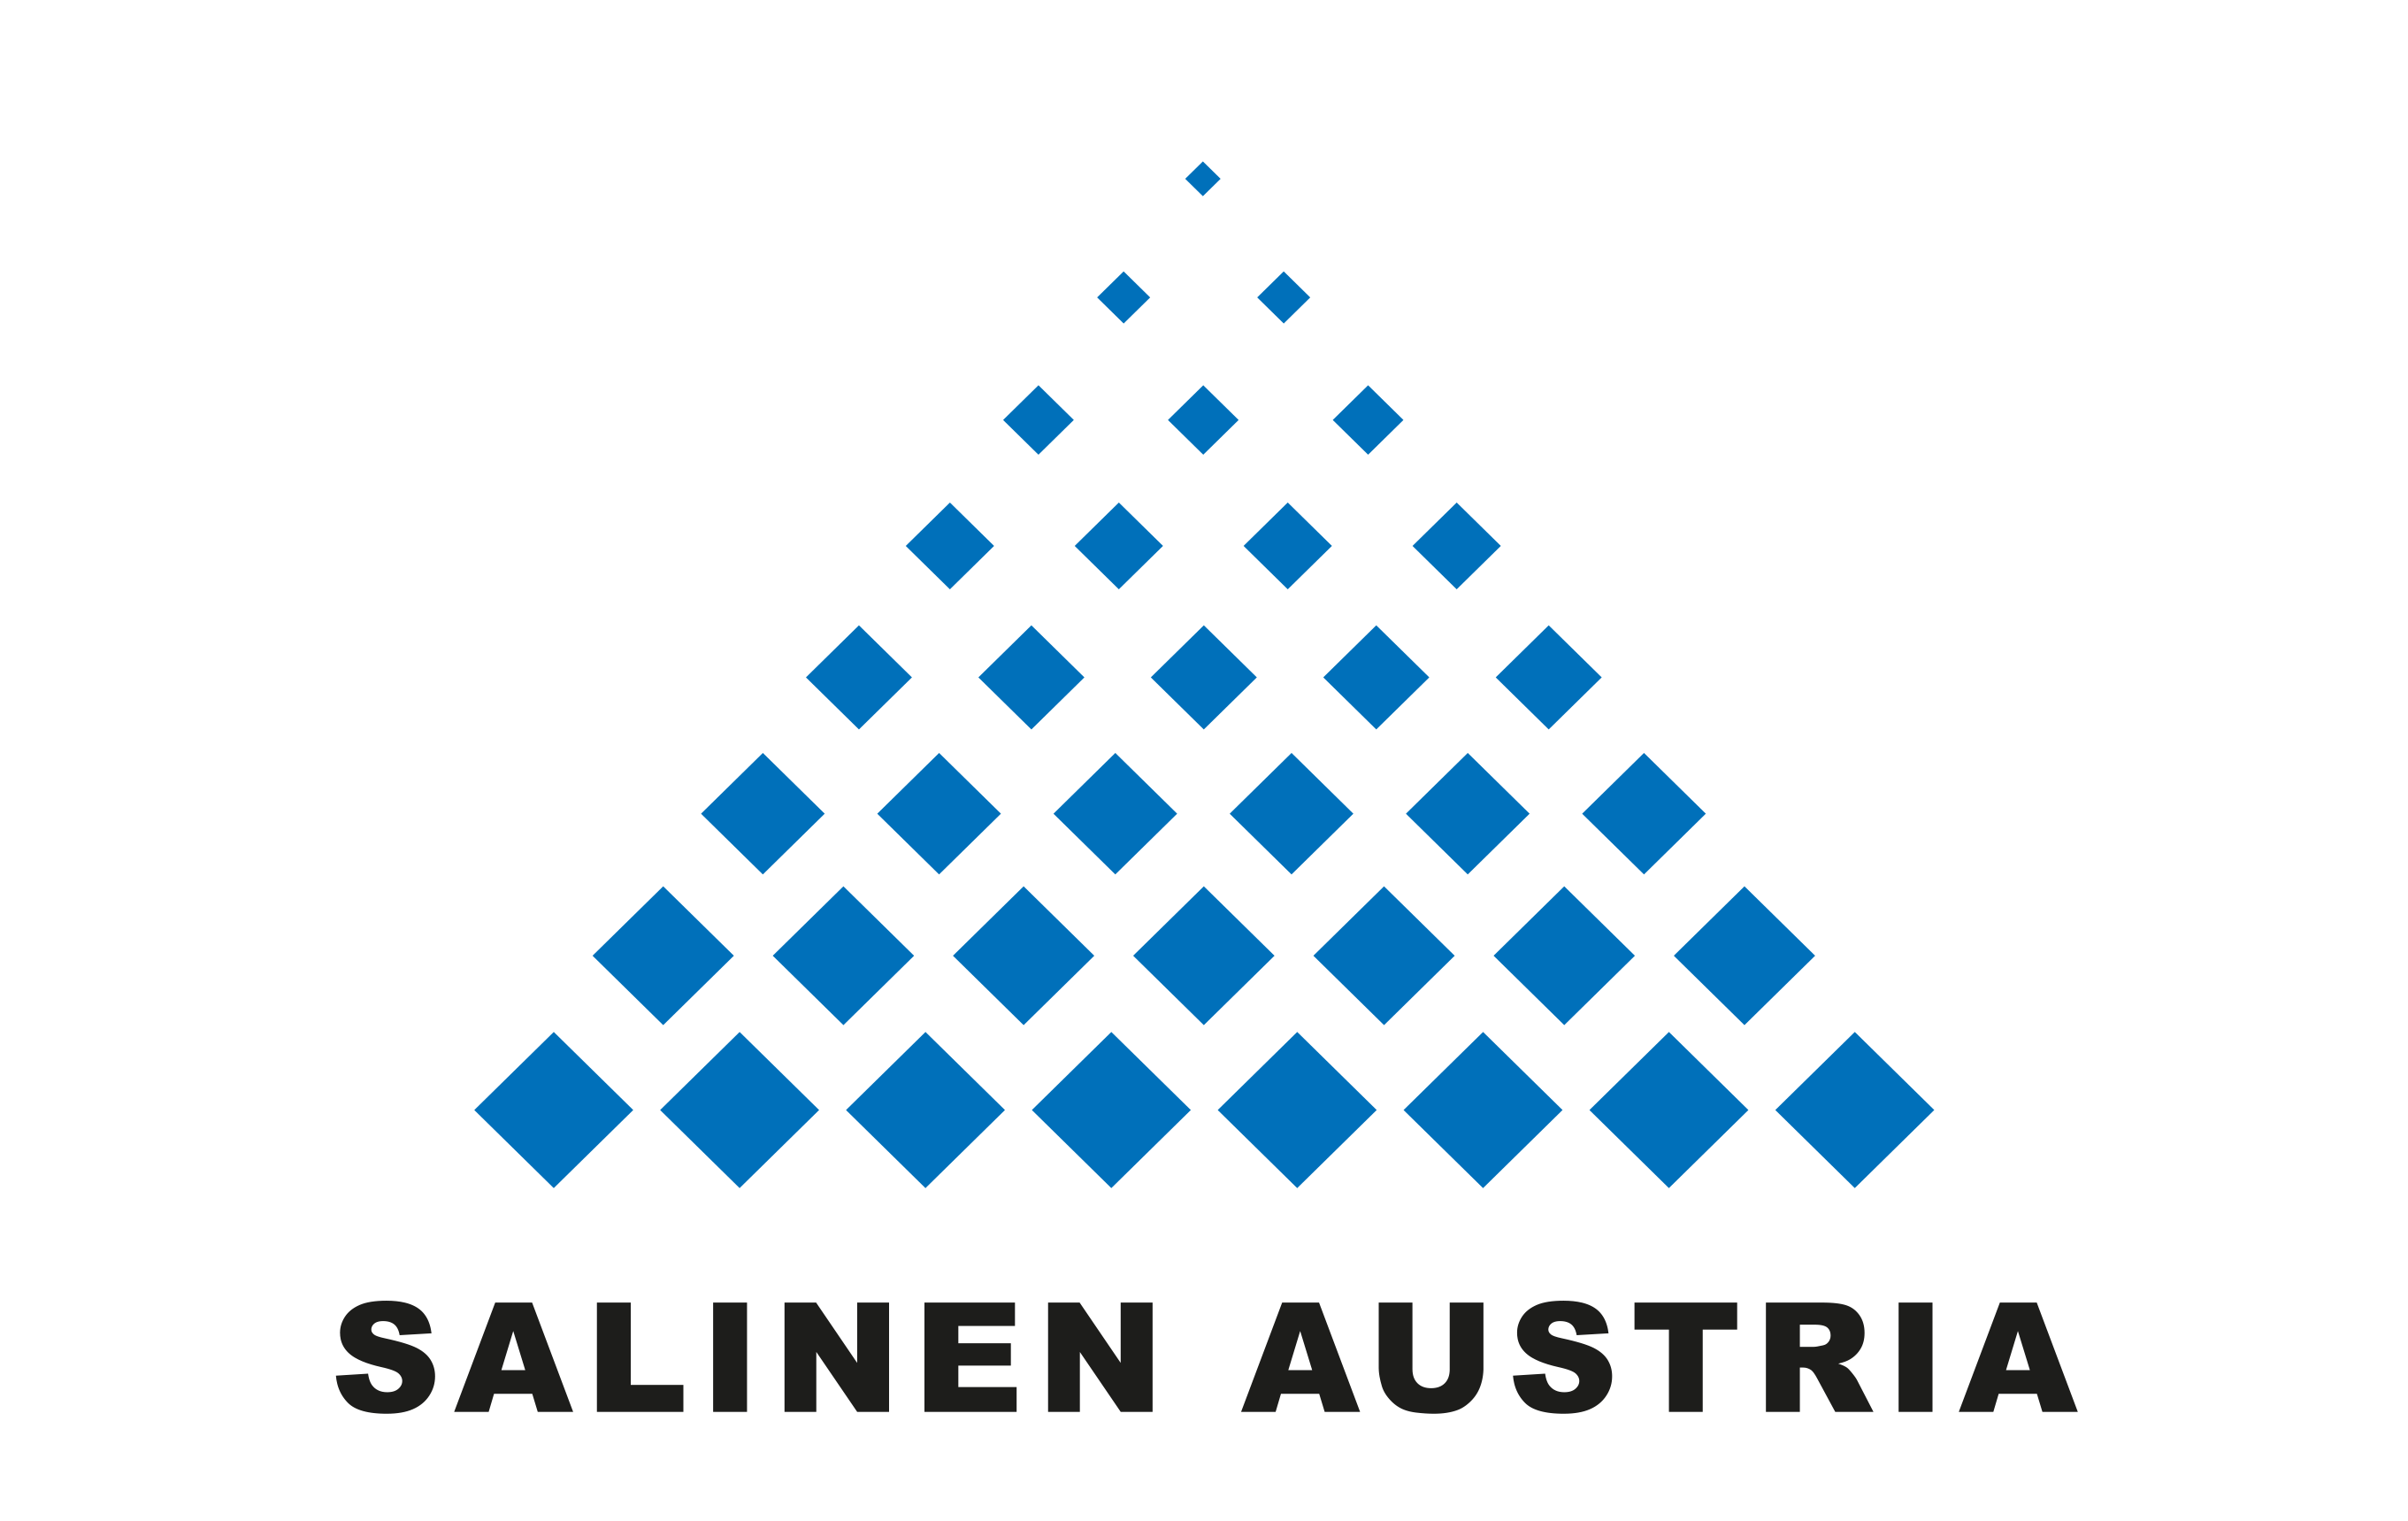 Salinen Austria AG